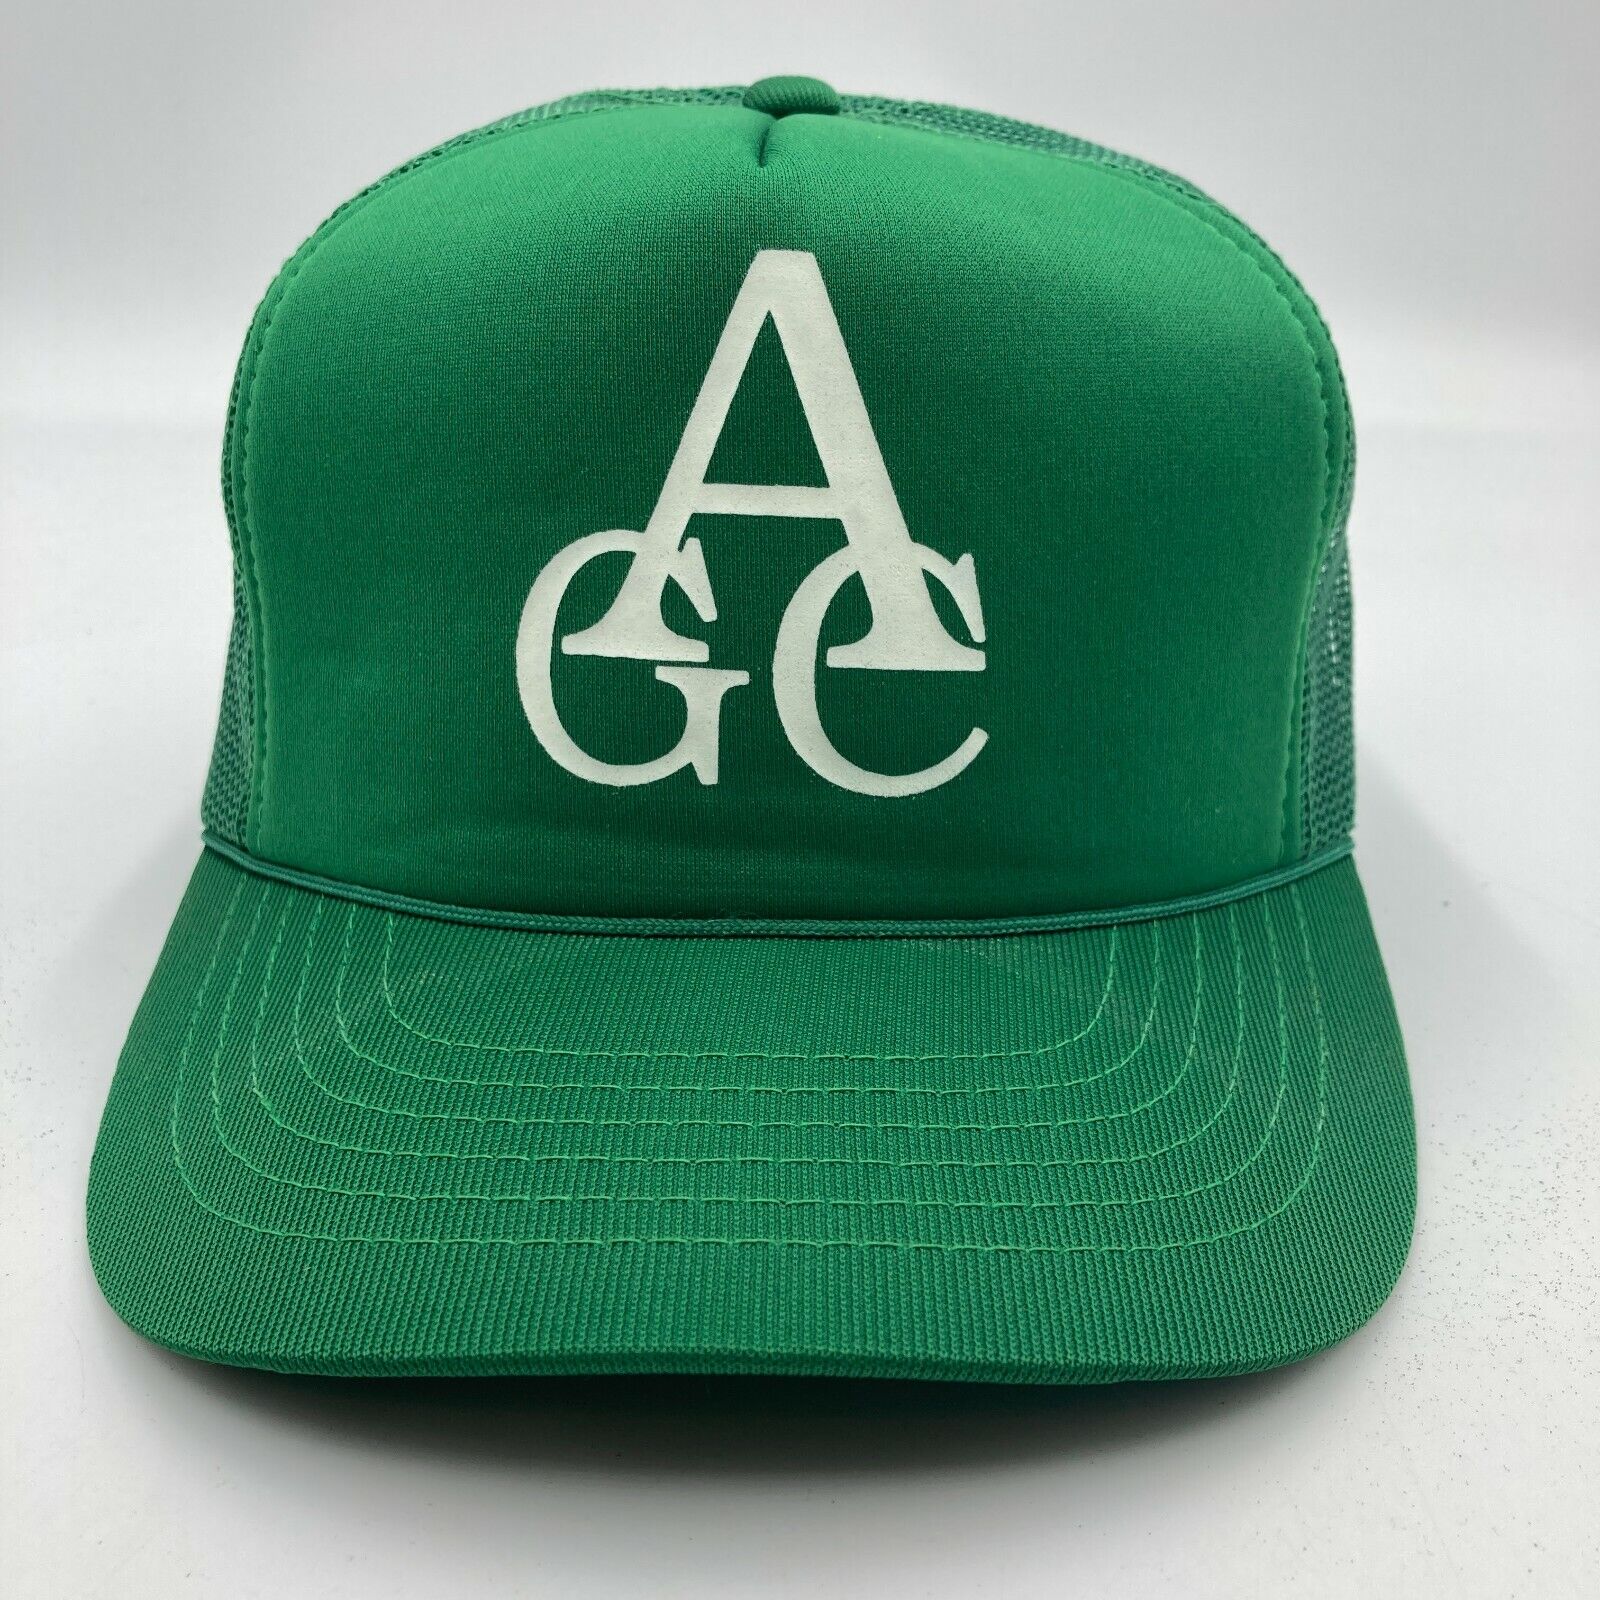 Vintage AGC Trucker Hat Cap Green Snap Back